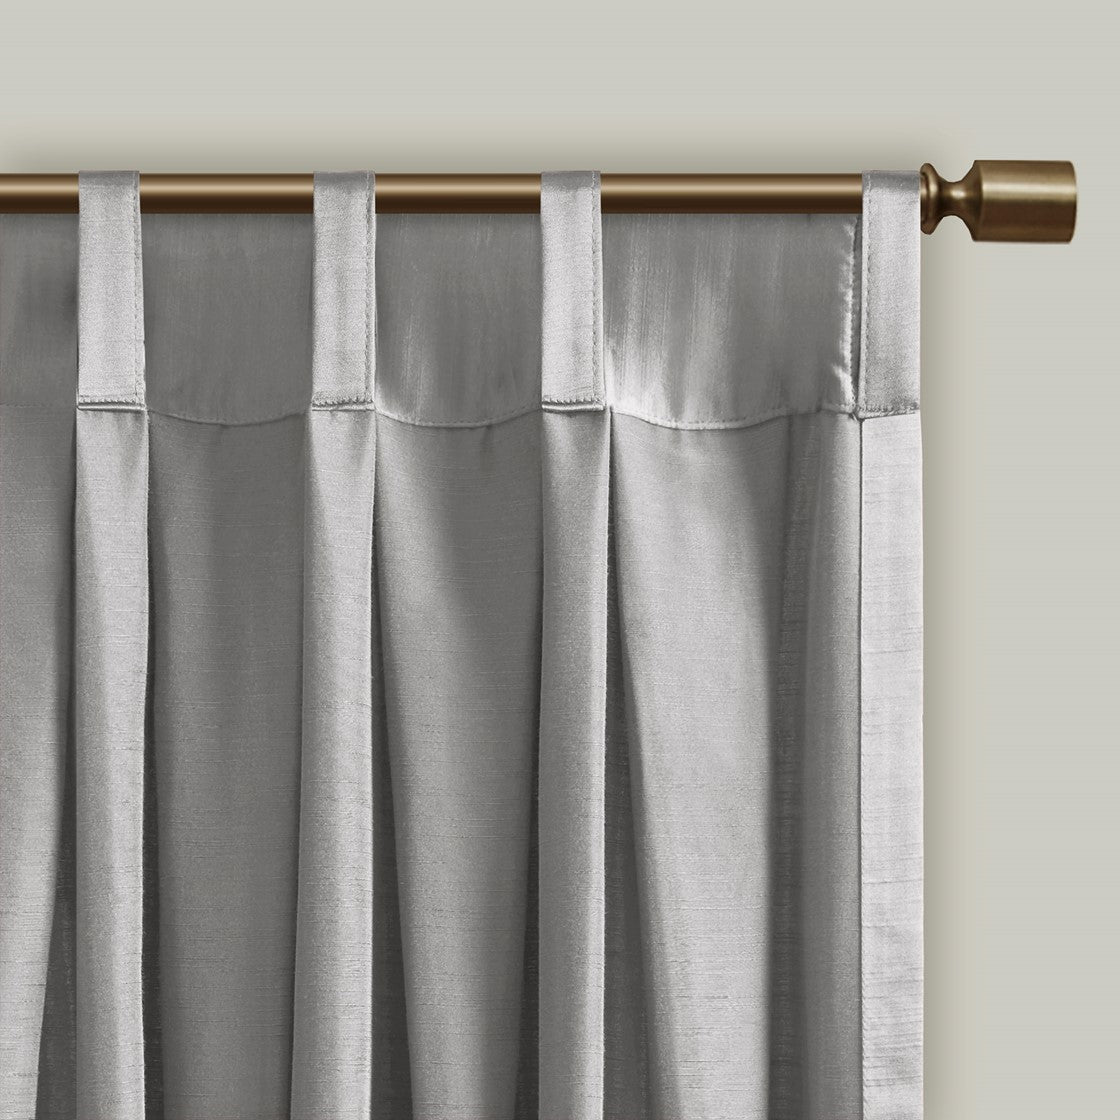 Avignon Pleat Curtain Panel with Tieback (Single)